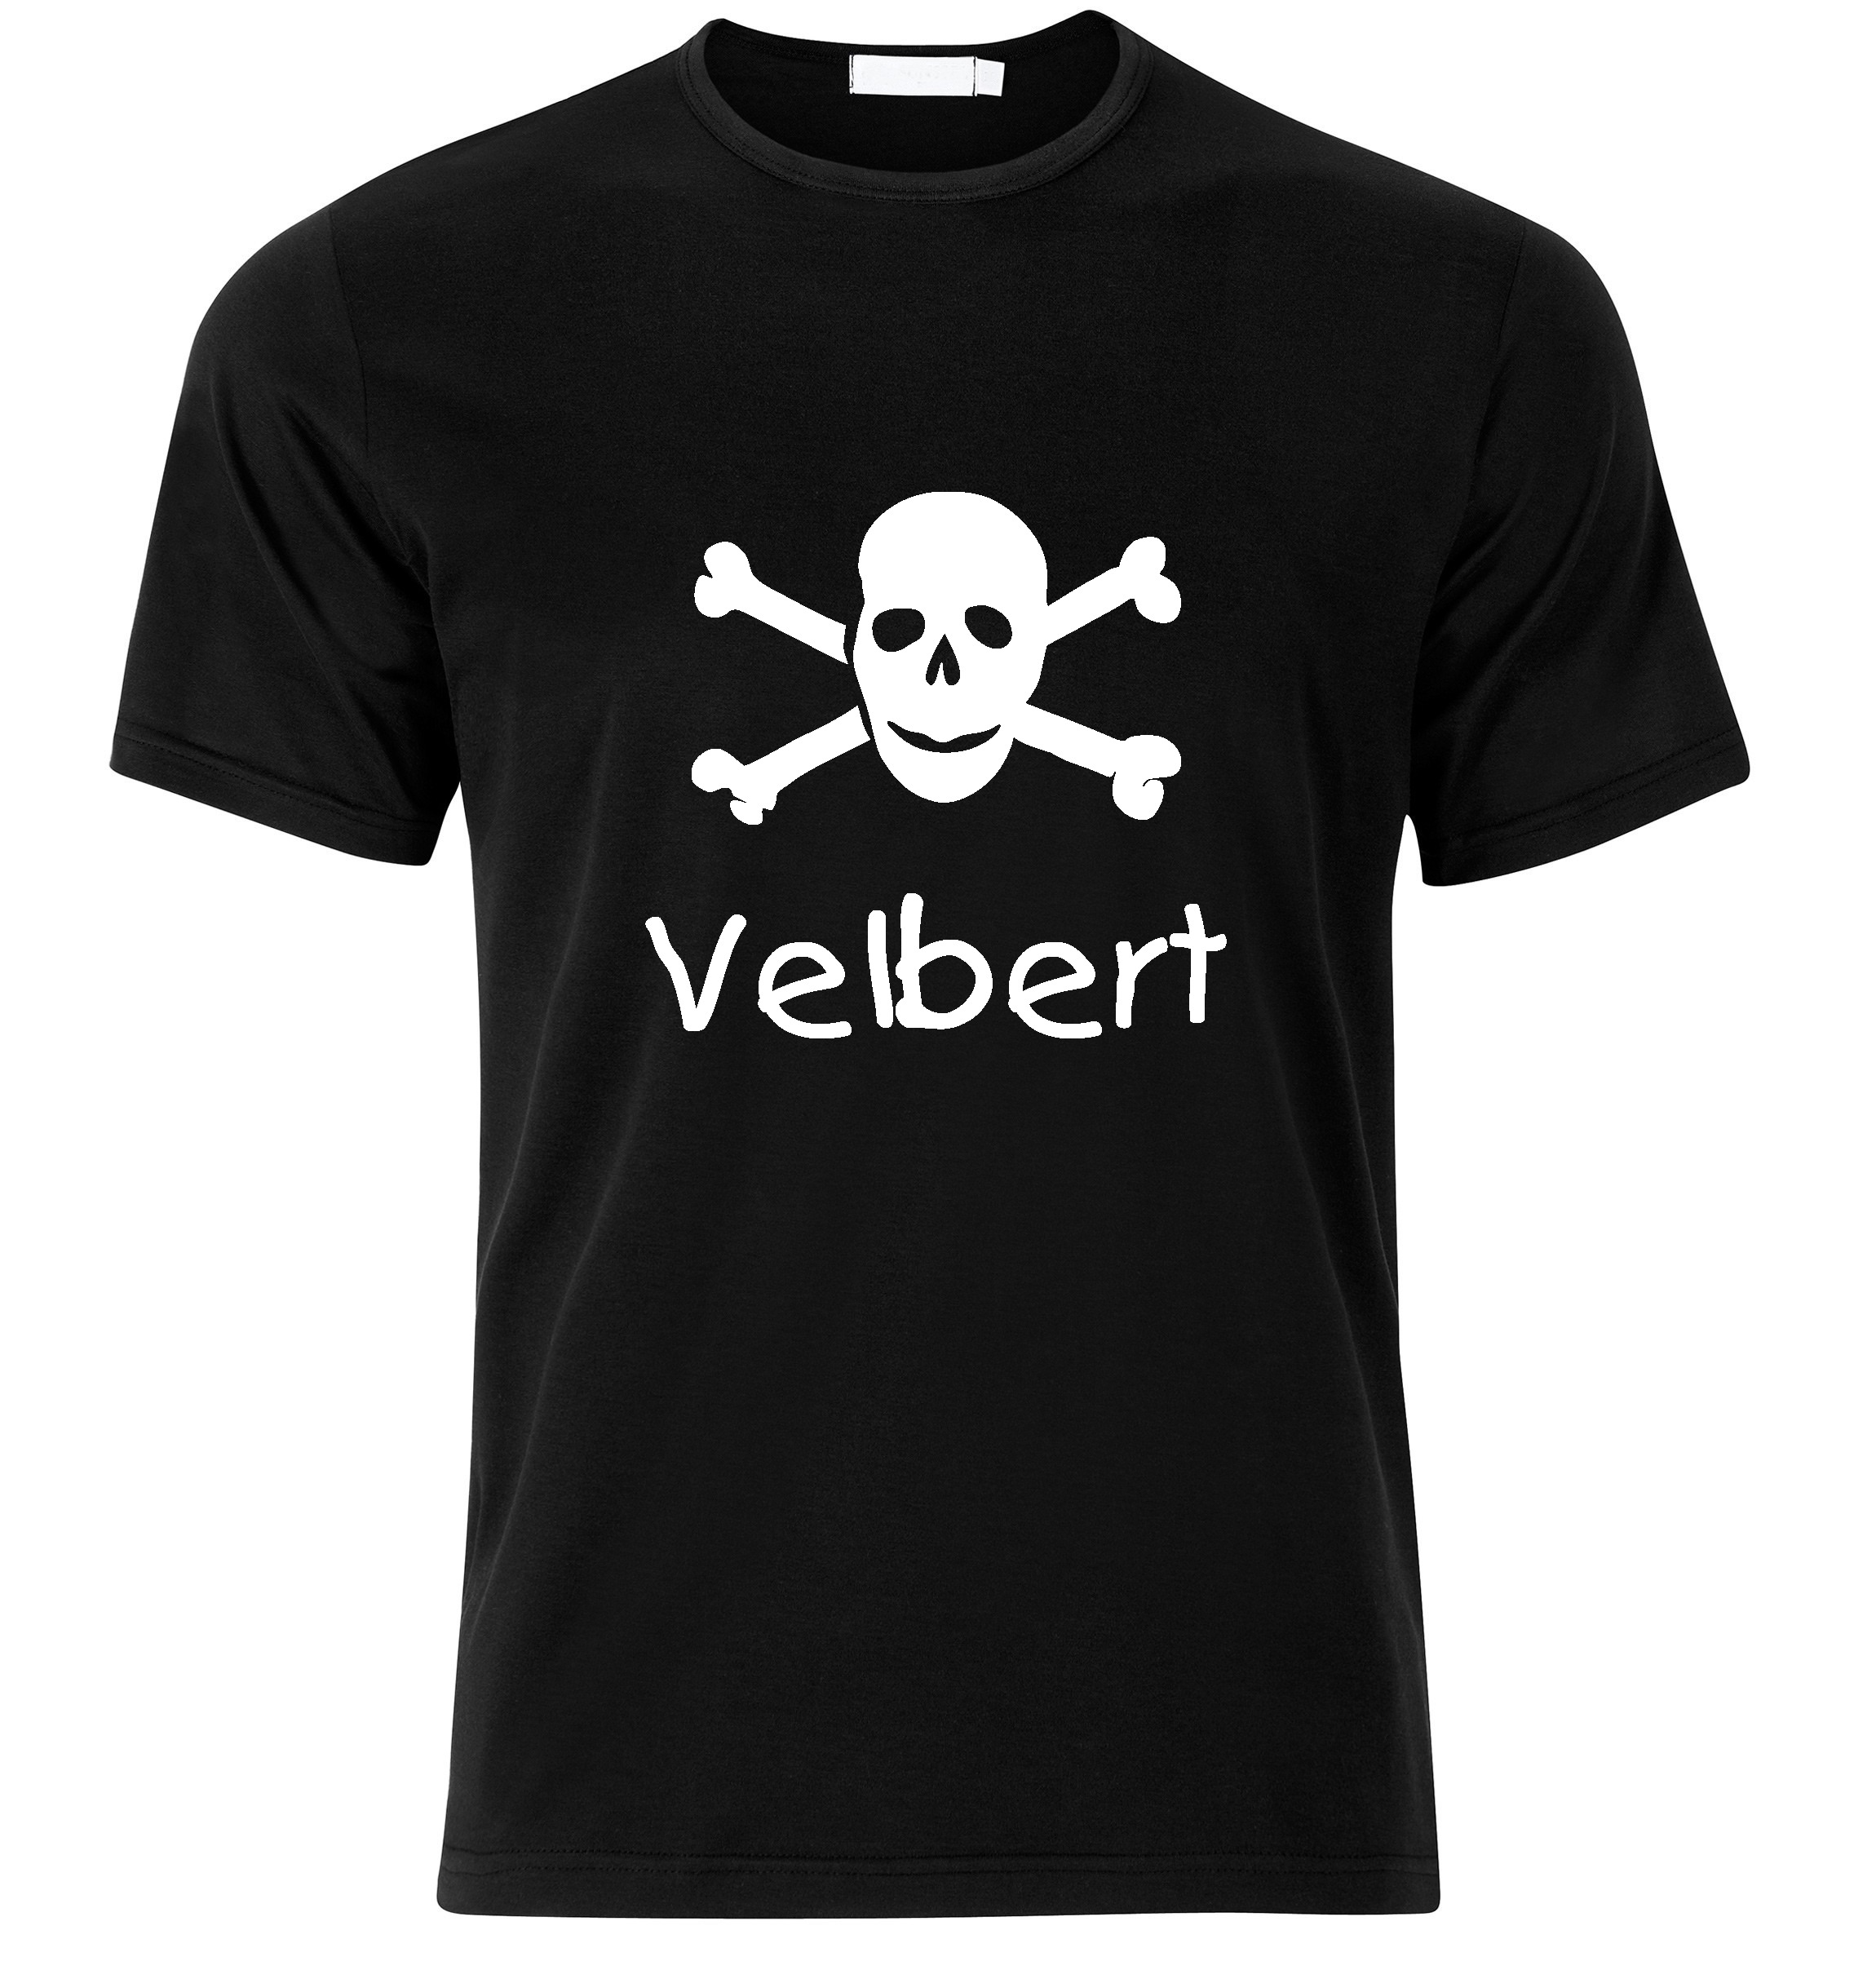 T-Shirt Velbert Jolly Roger, Totenkopf